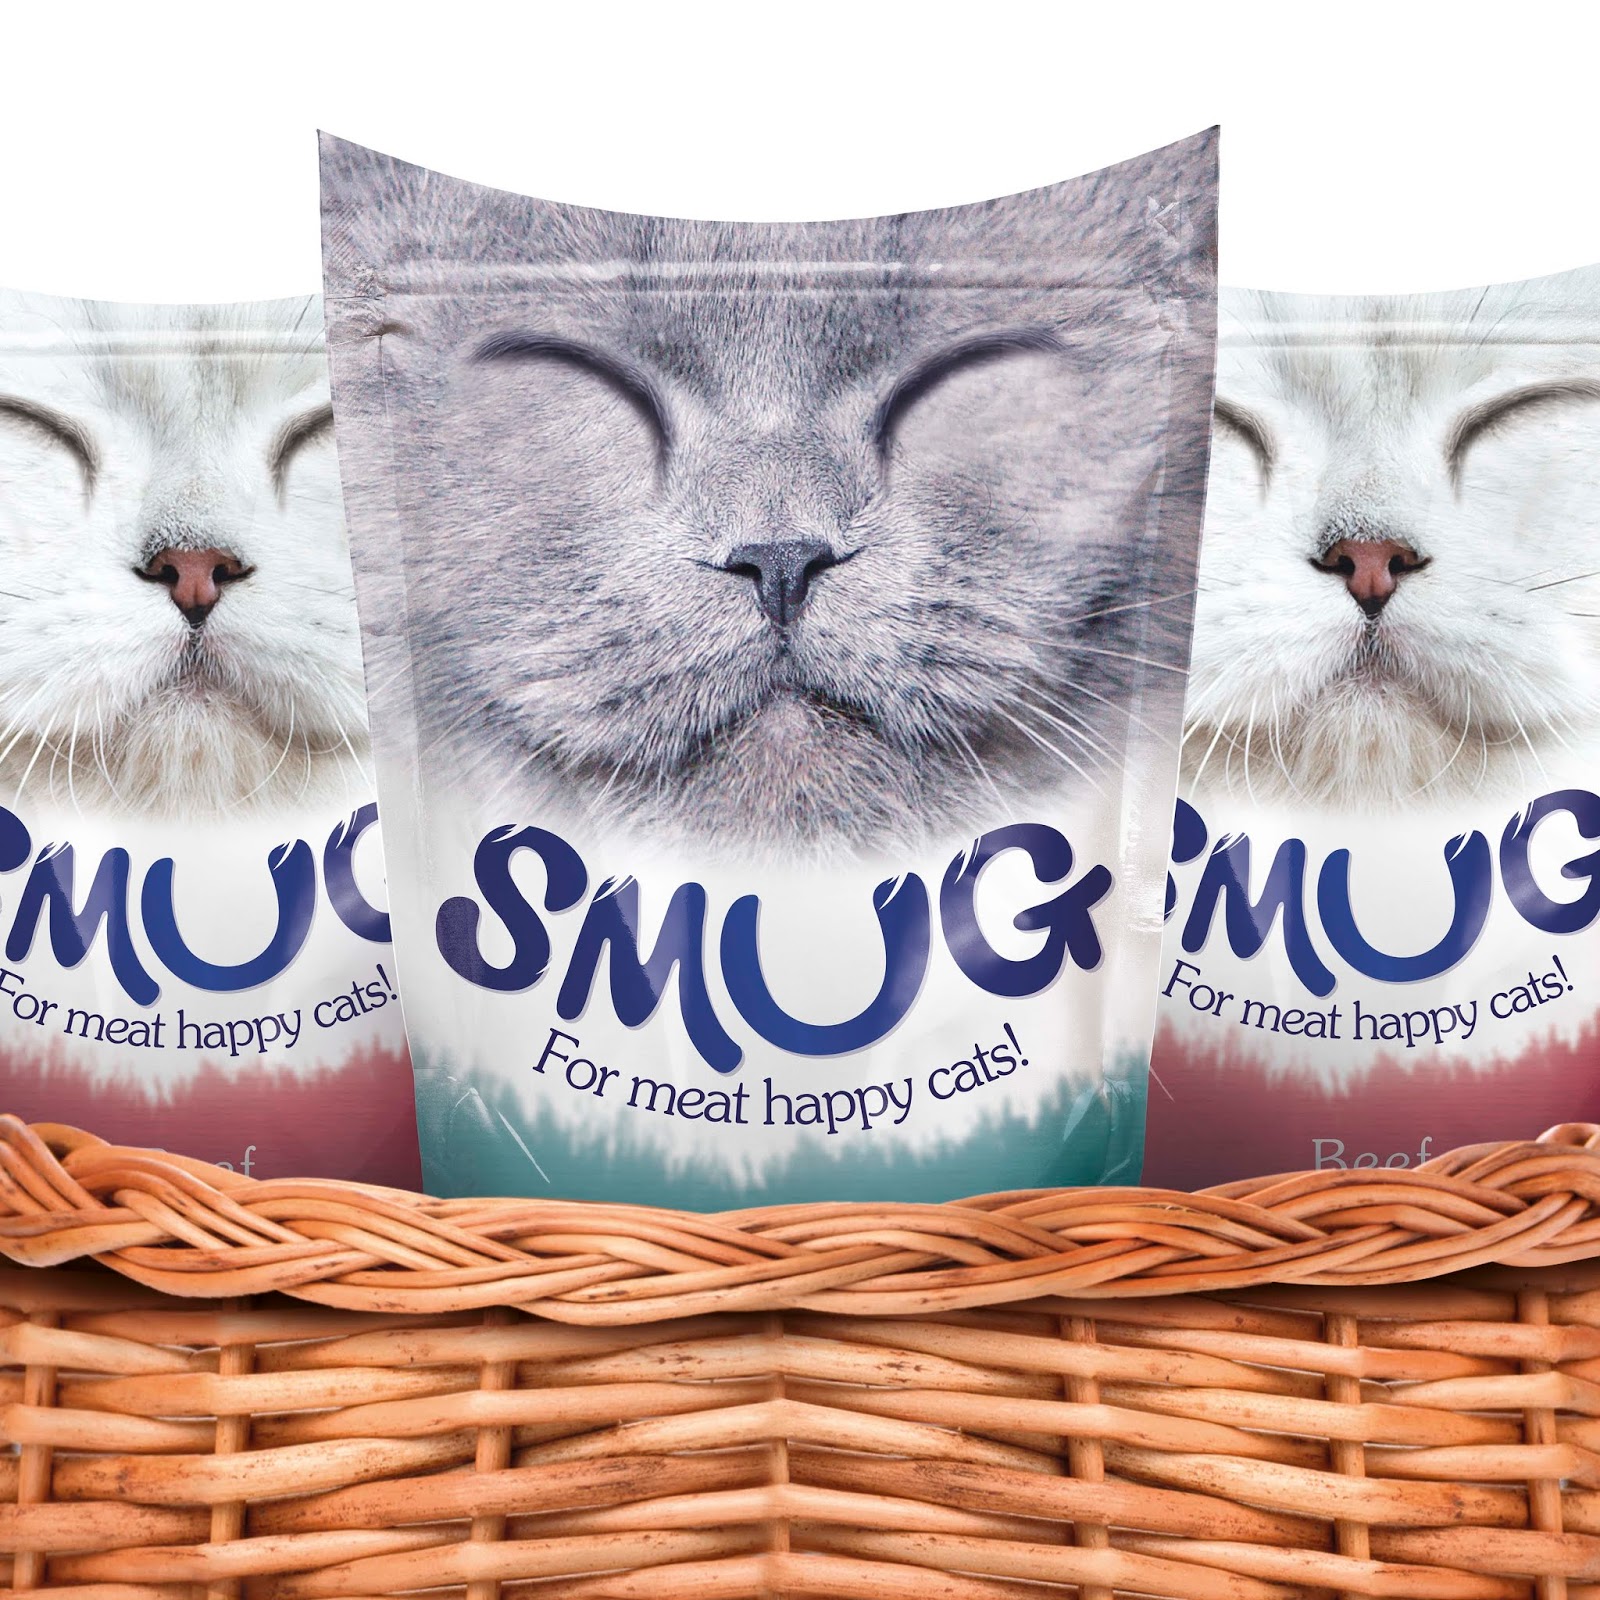 猫粮猫宠物食品西安oe欧亿体育app官方下载
品牌包装设计